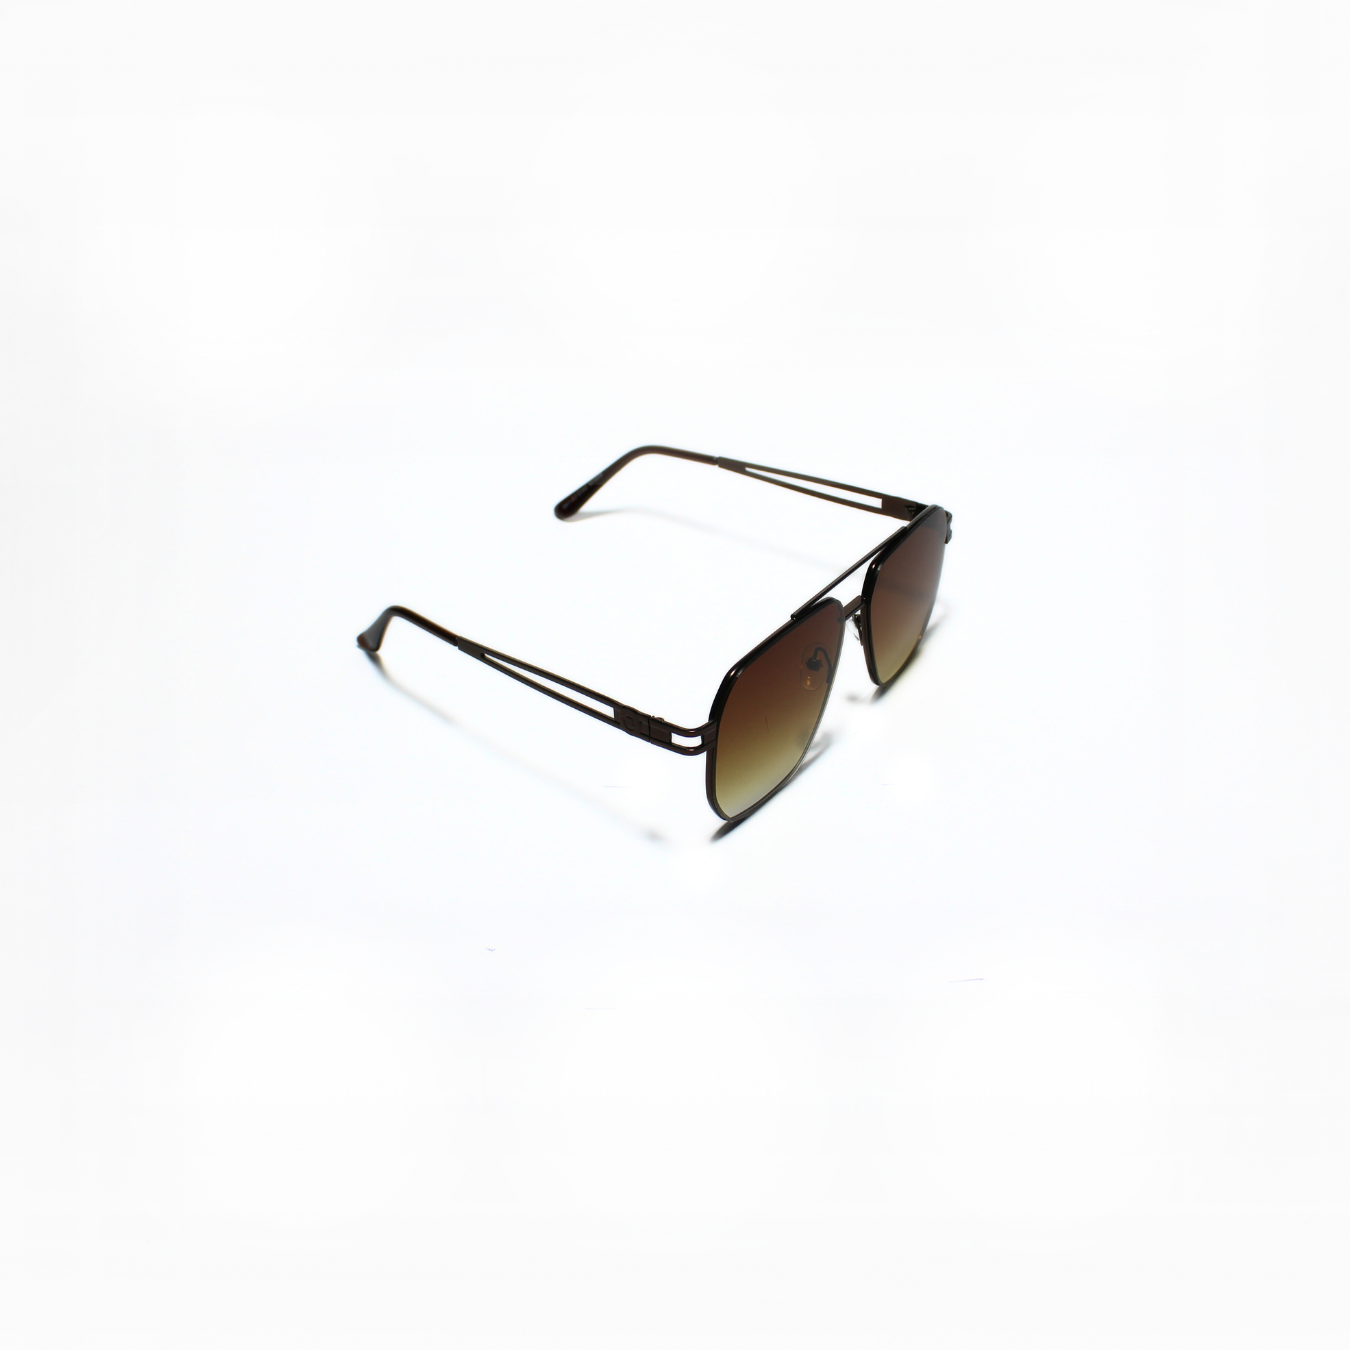 ARTHUR-I//002 I Sunglasses for Women - Specsview